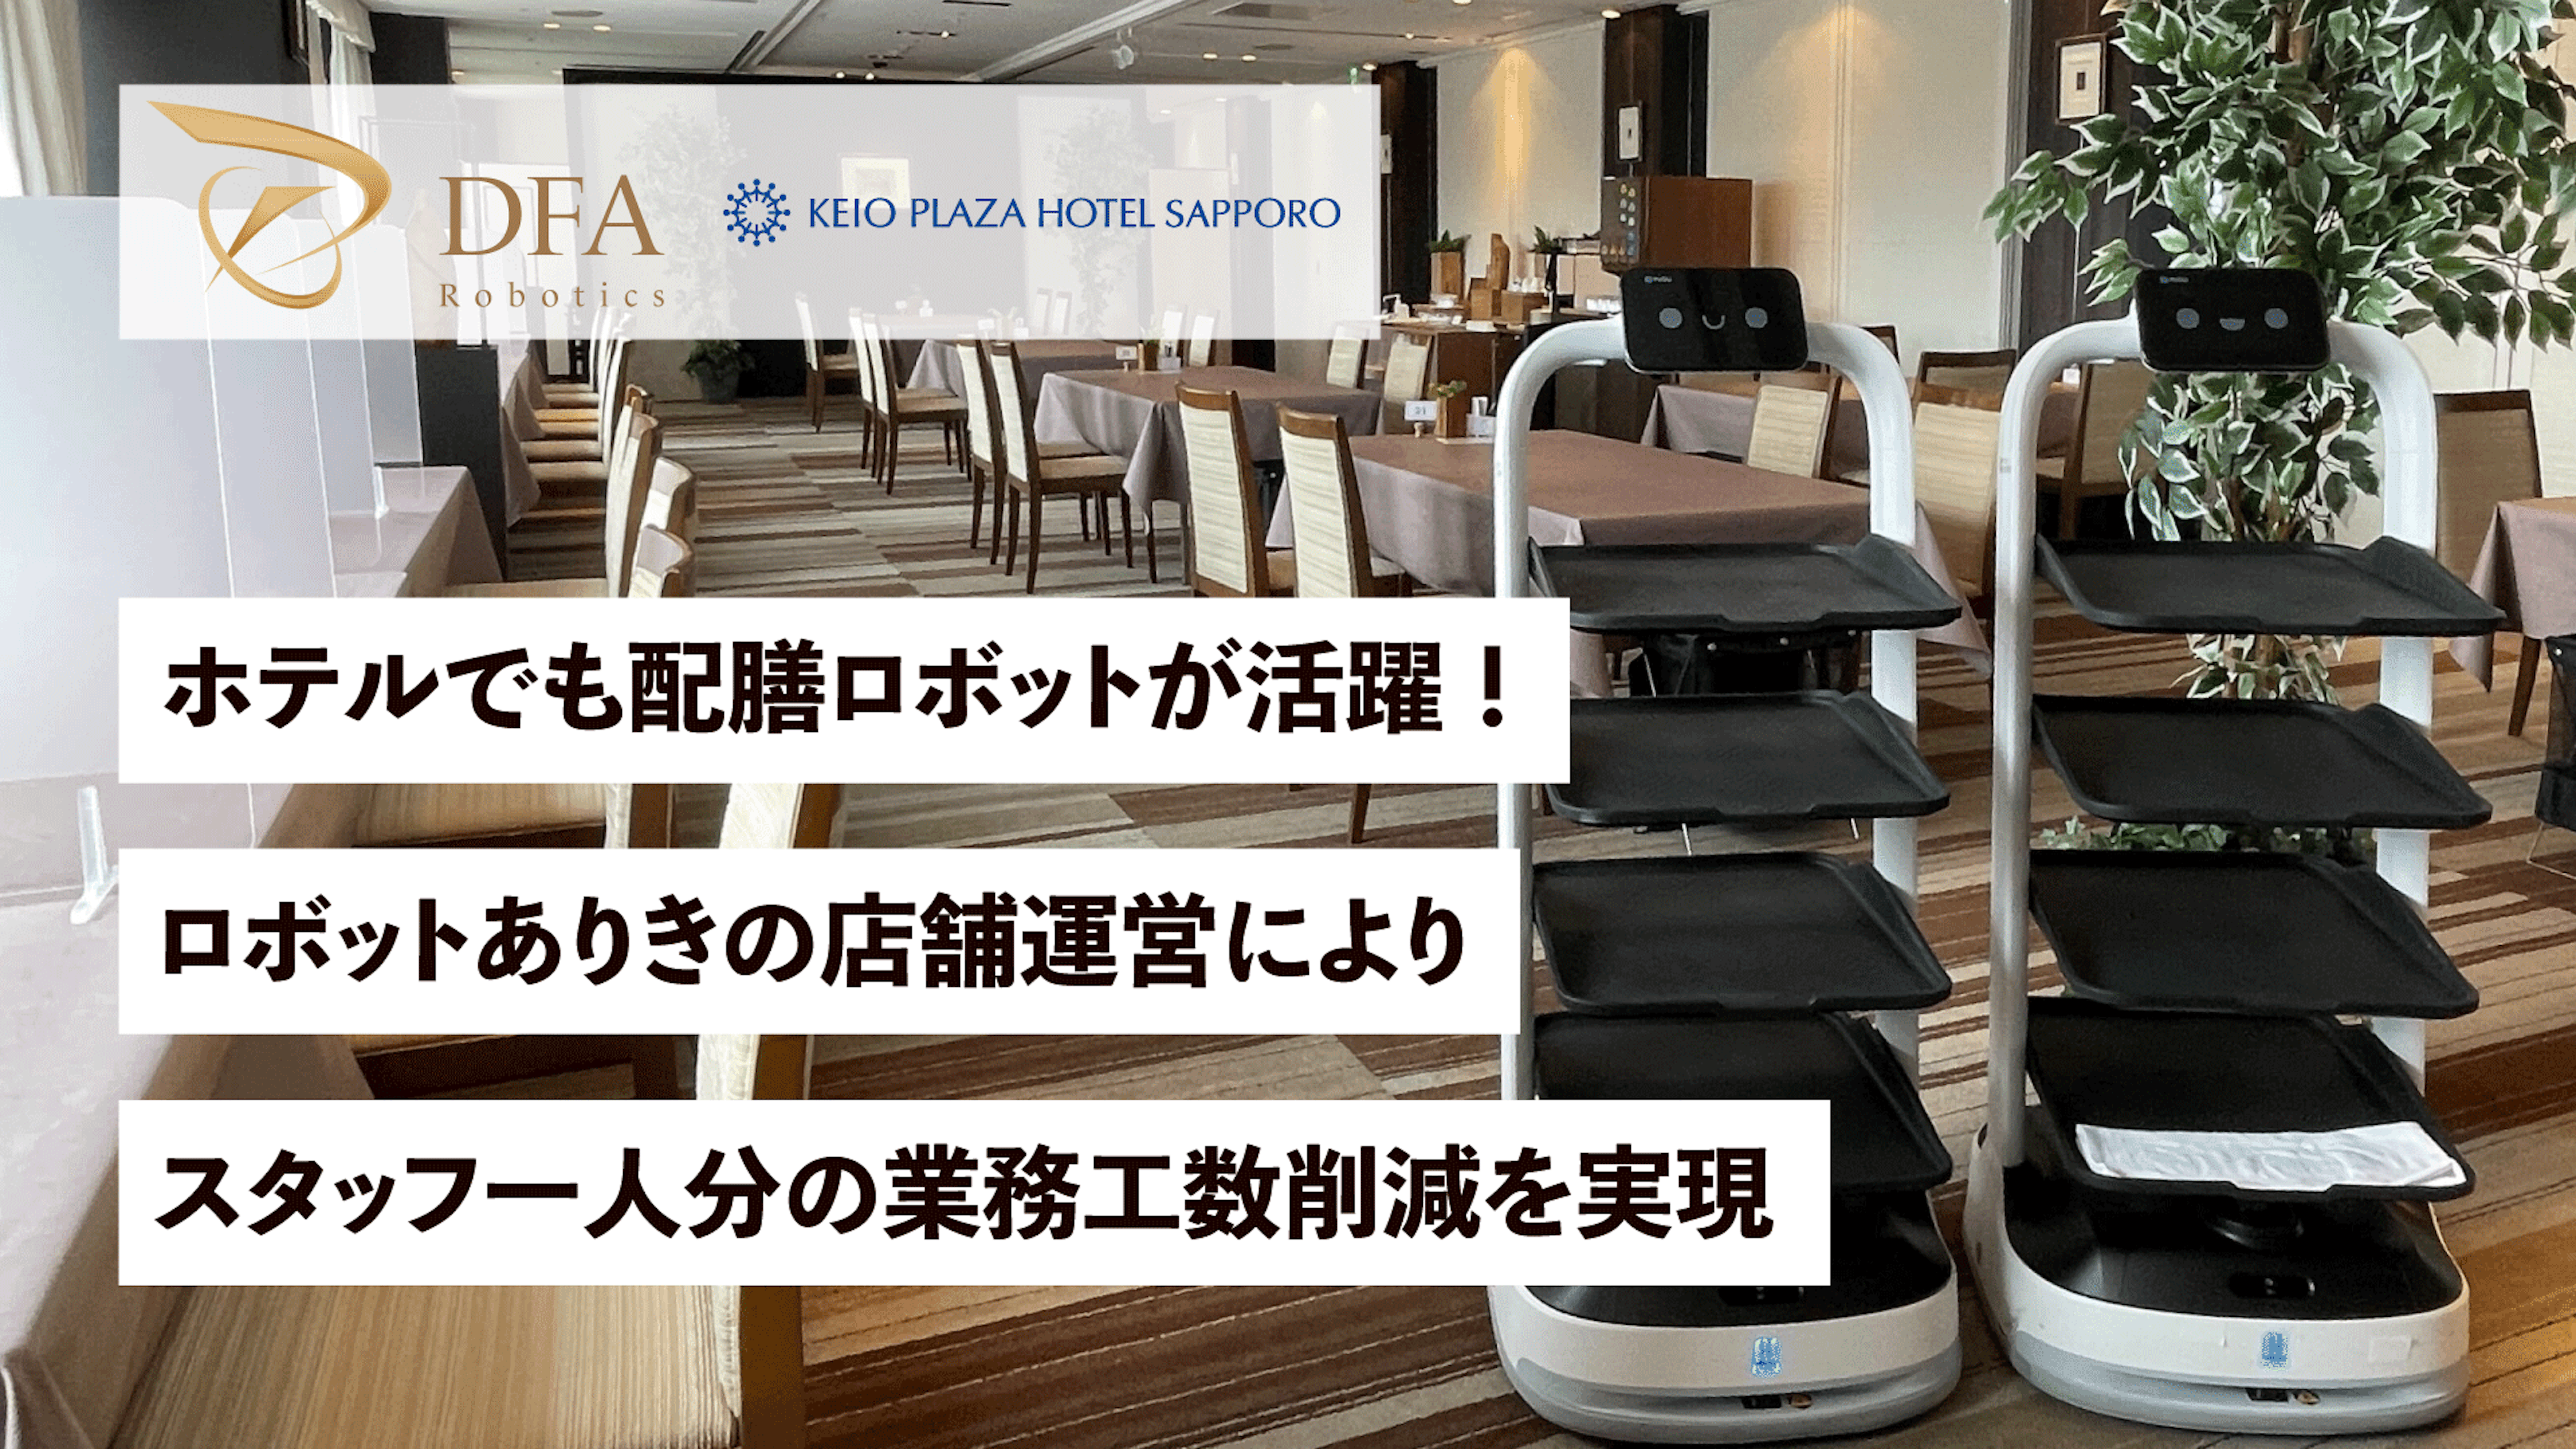 ホテルでも配膳ロボットが活躍！
ロボットありきの店舗運営によりスタッフ一人分の業務工数を削減
